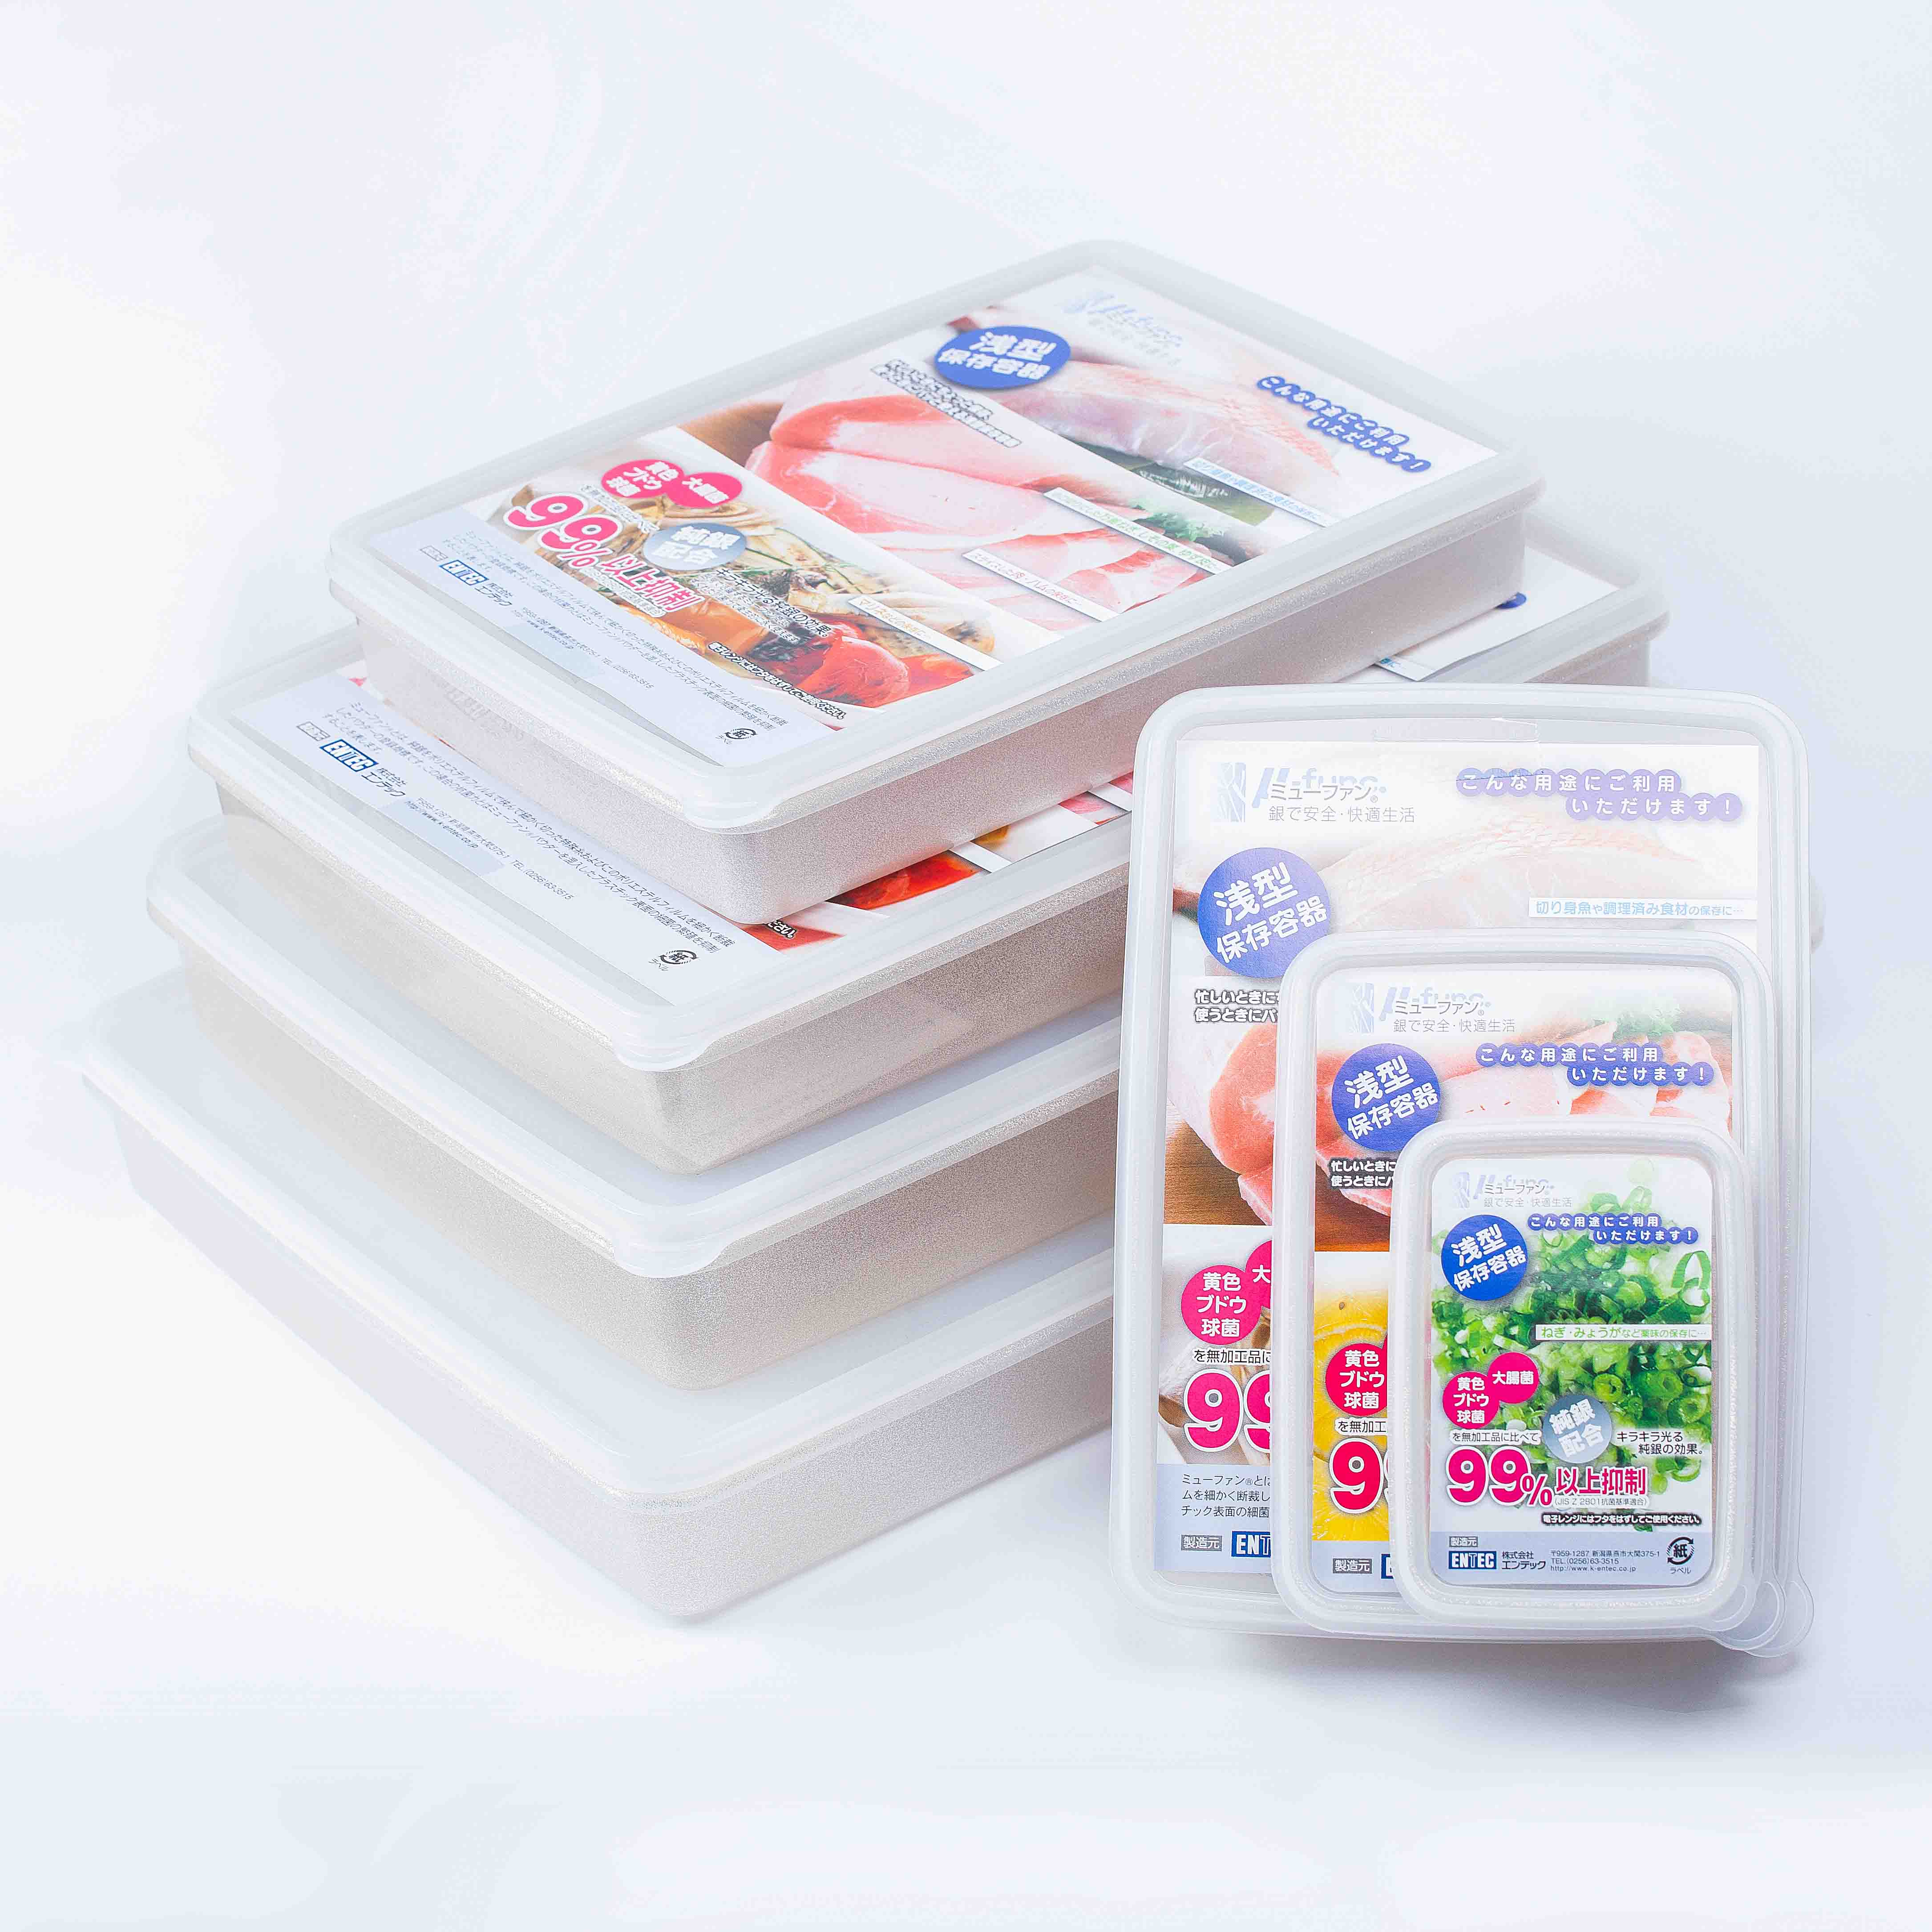 日本製mju-func®妙屋房銀纖維銀離子薄型抗菌保鮮盒7件套組